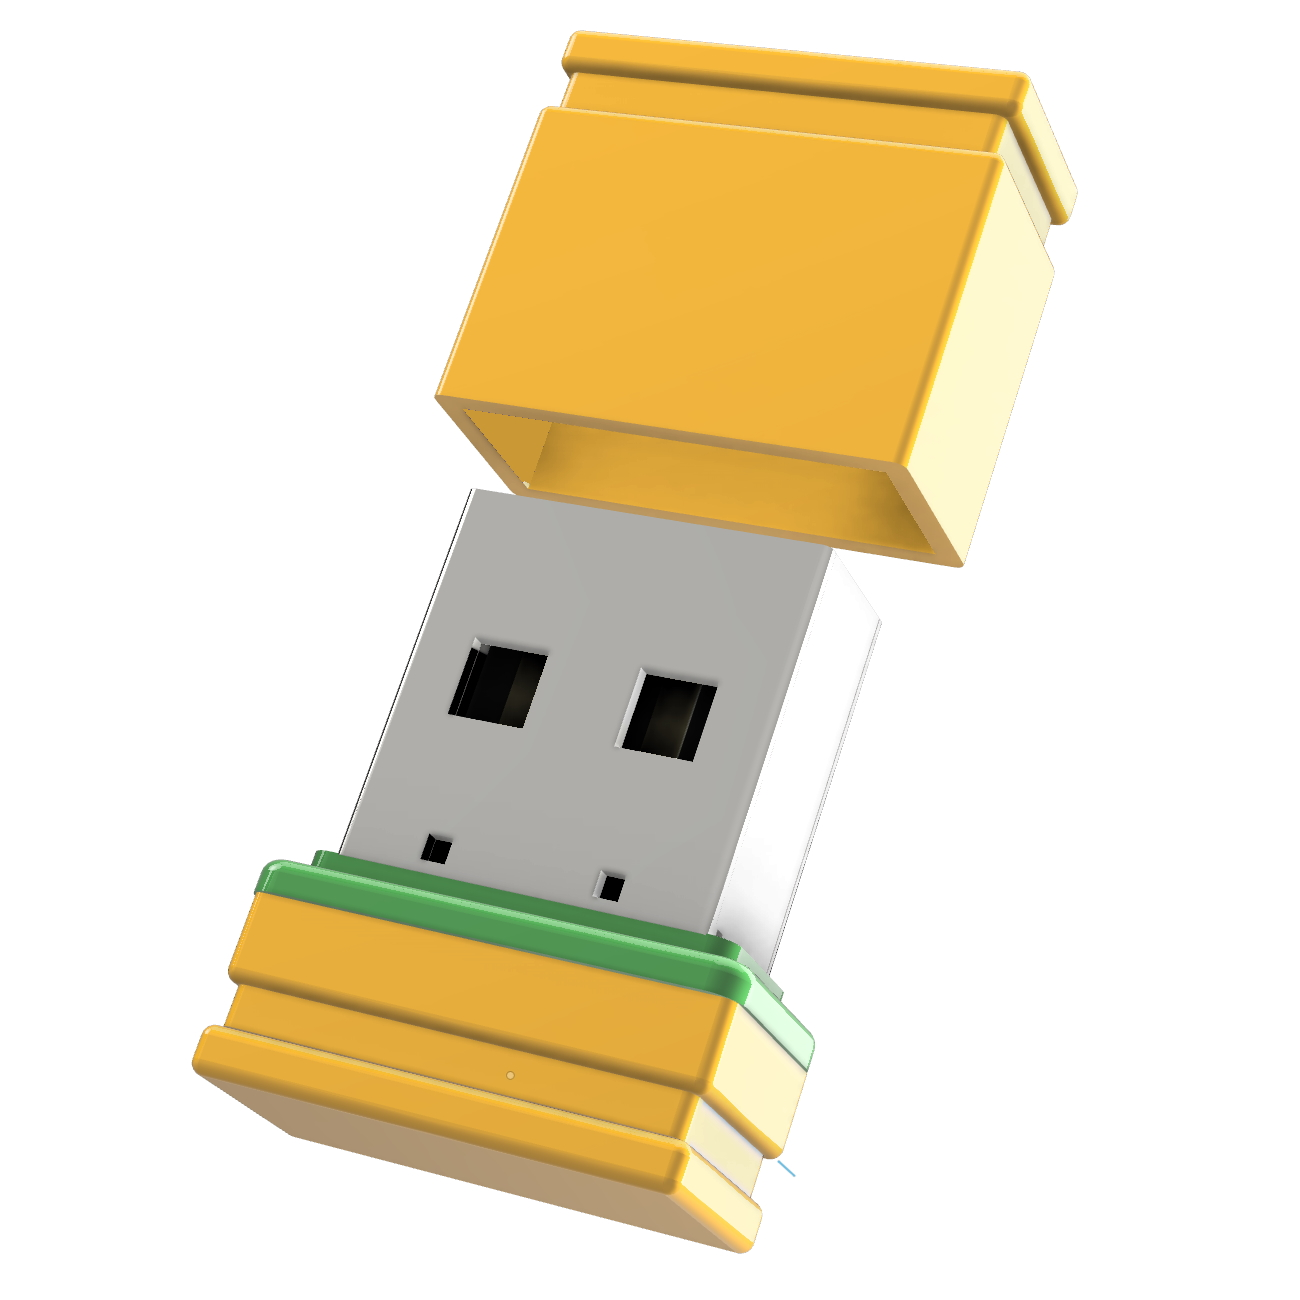 ®ULTRA USB-Stick Mini GB) 8 P1 (Gelb/Grün, GERMANY USB